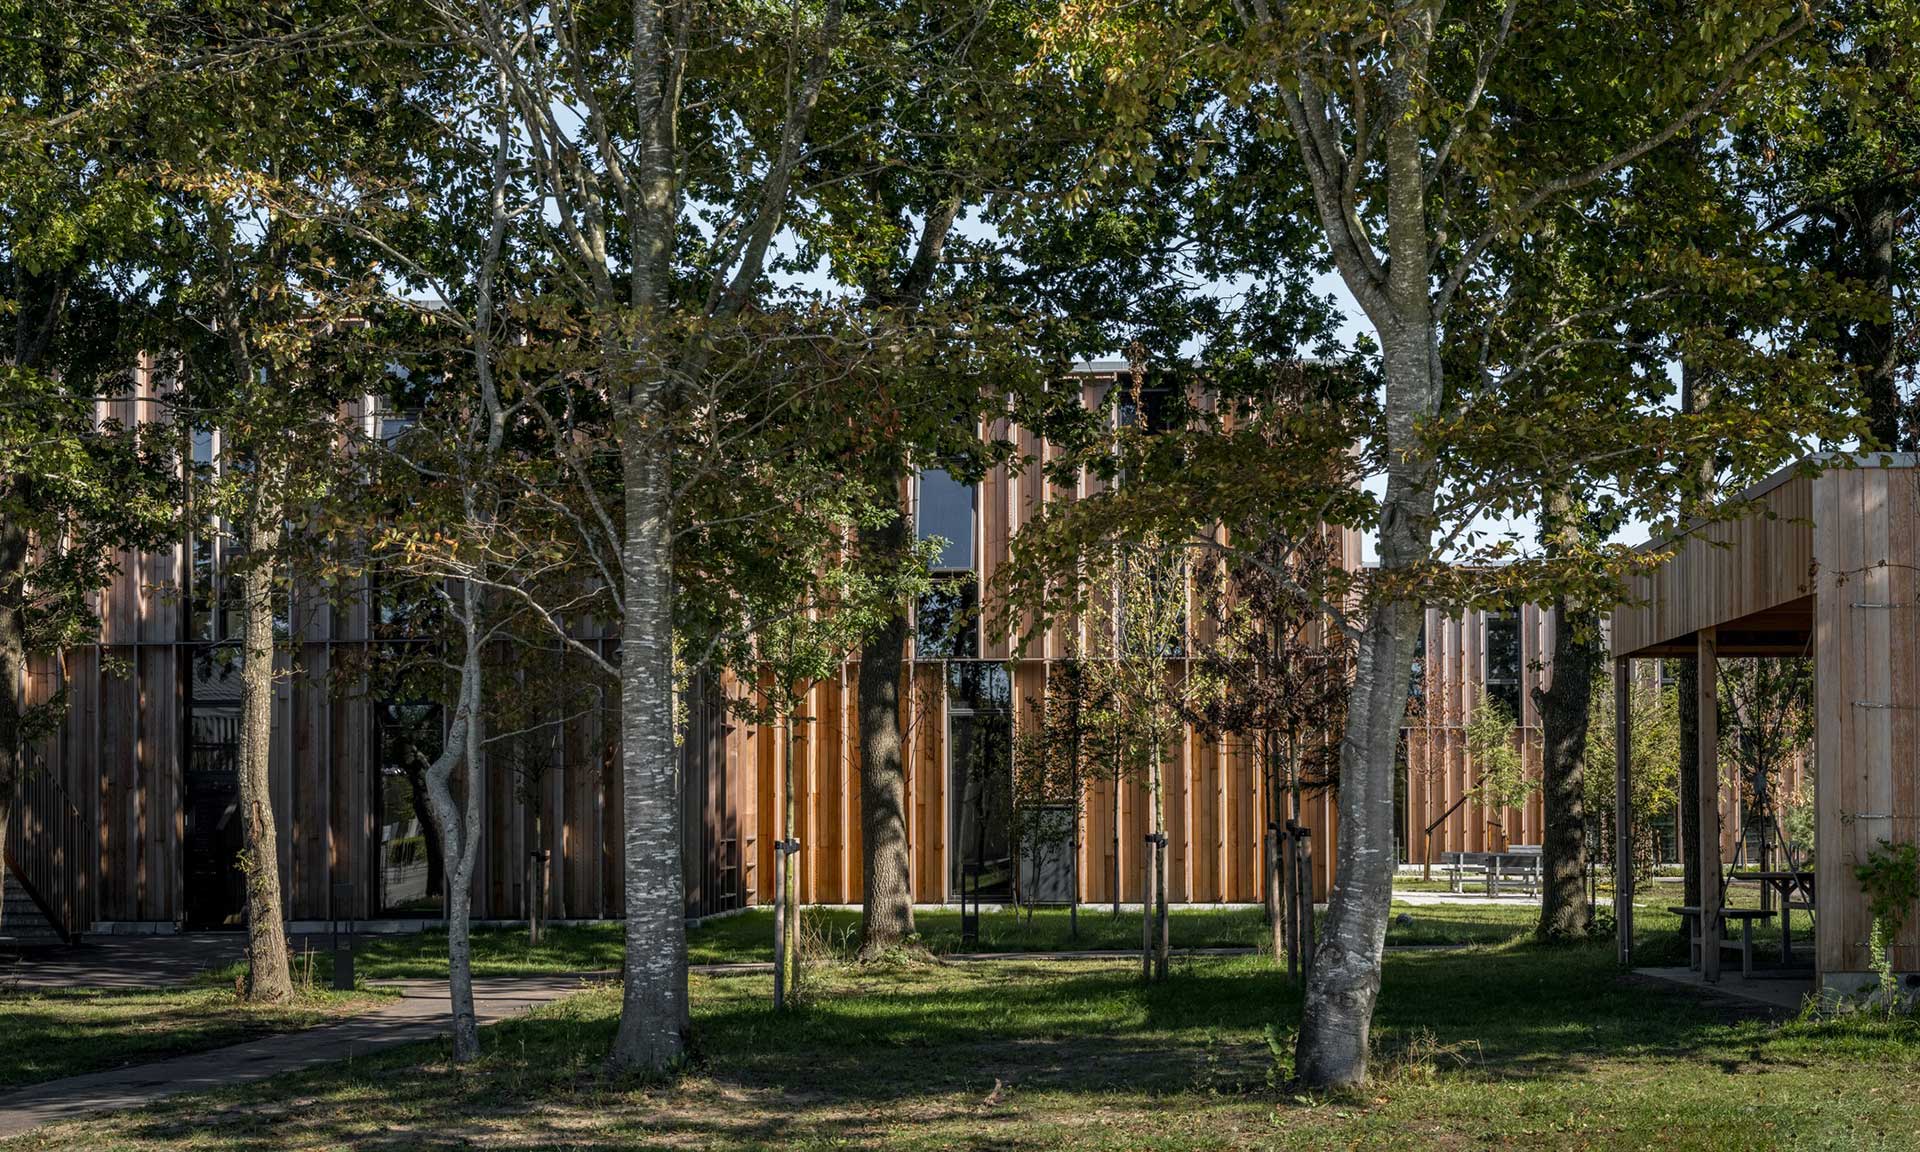 Dánská škola ve městě Vrå je usazena v lese a boří hranice mezi stavbou a přírodou